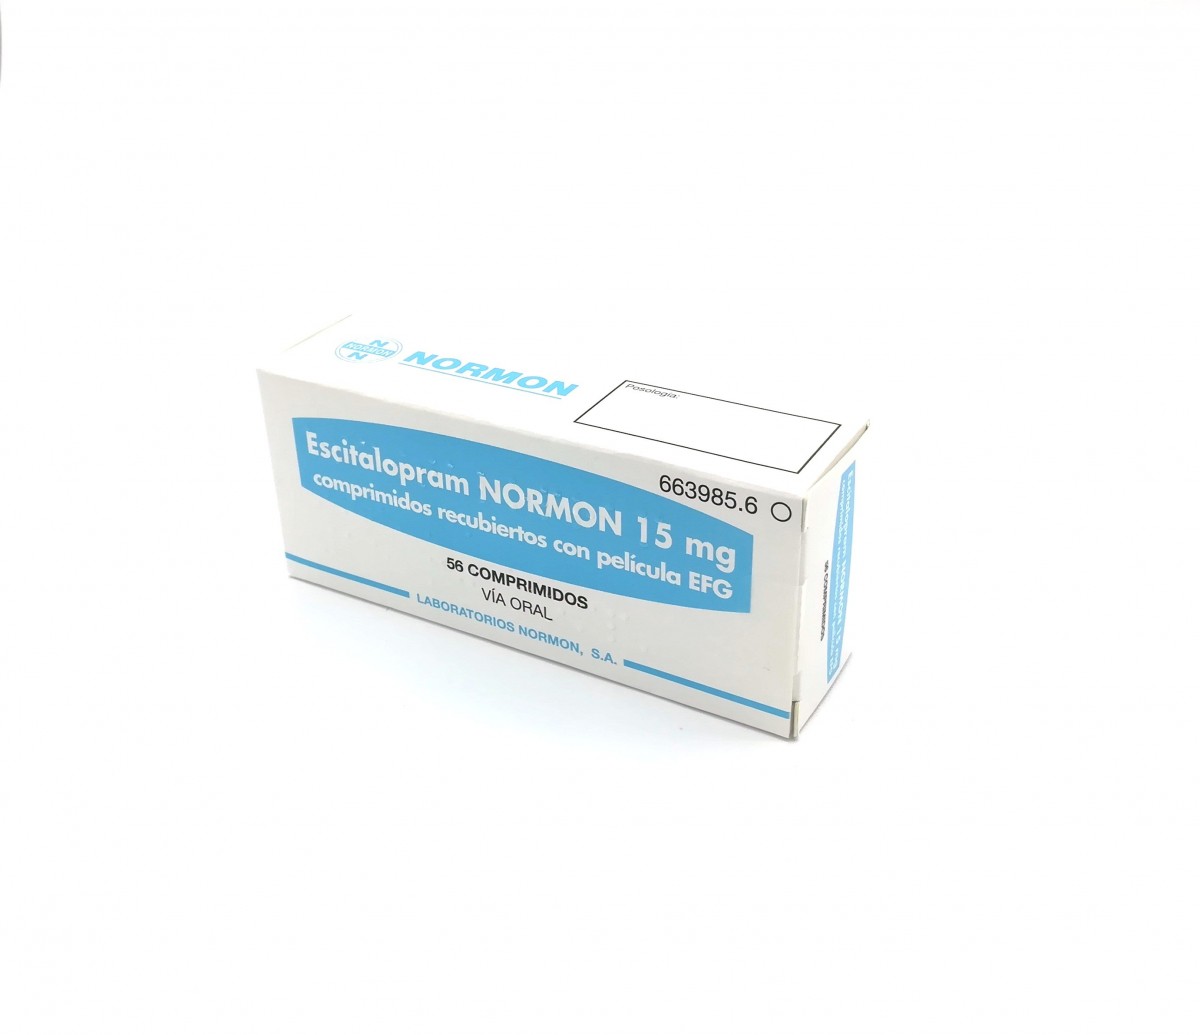 ESCITALOPRAM NORMON 15 mg COMPRIMIDOS RECUBIERTOS CON PELICULA EFG, 56 comprimidos fotografía del envase.